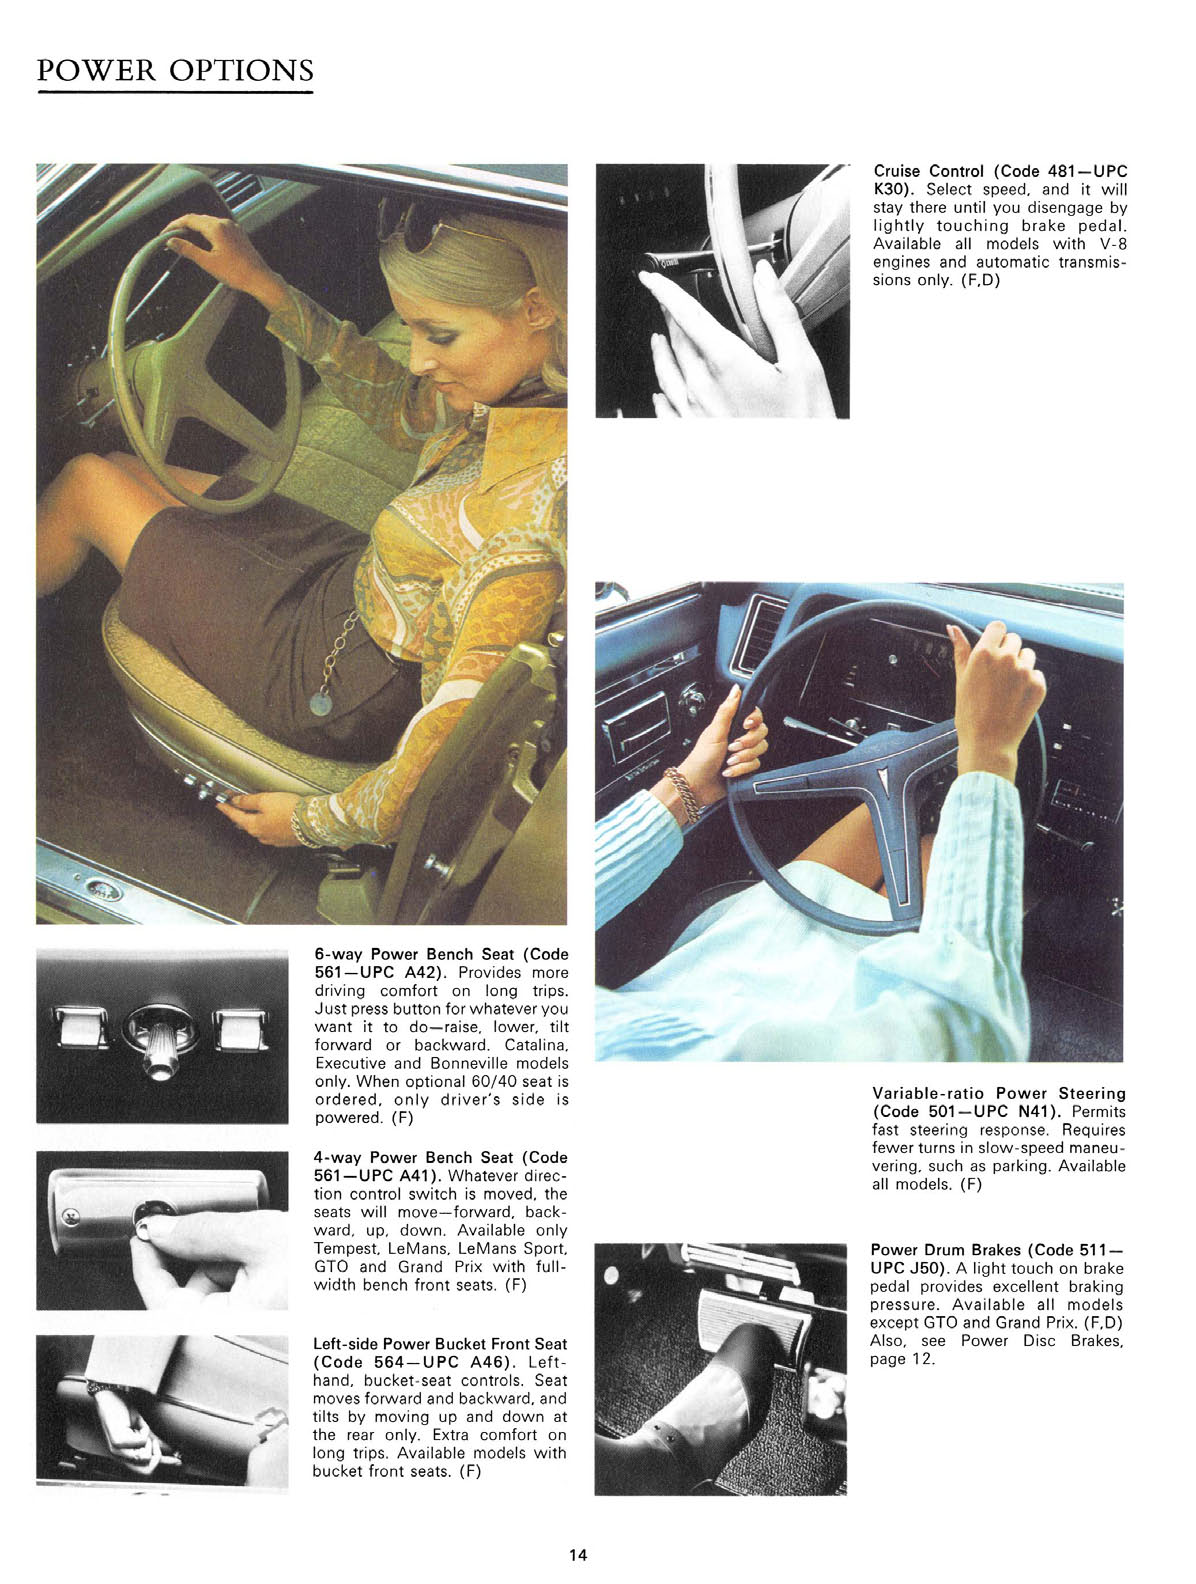 n_1970 Pontiac Accessories-14.jpg